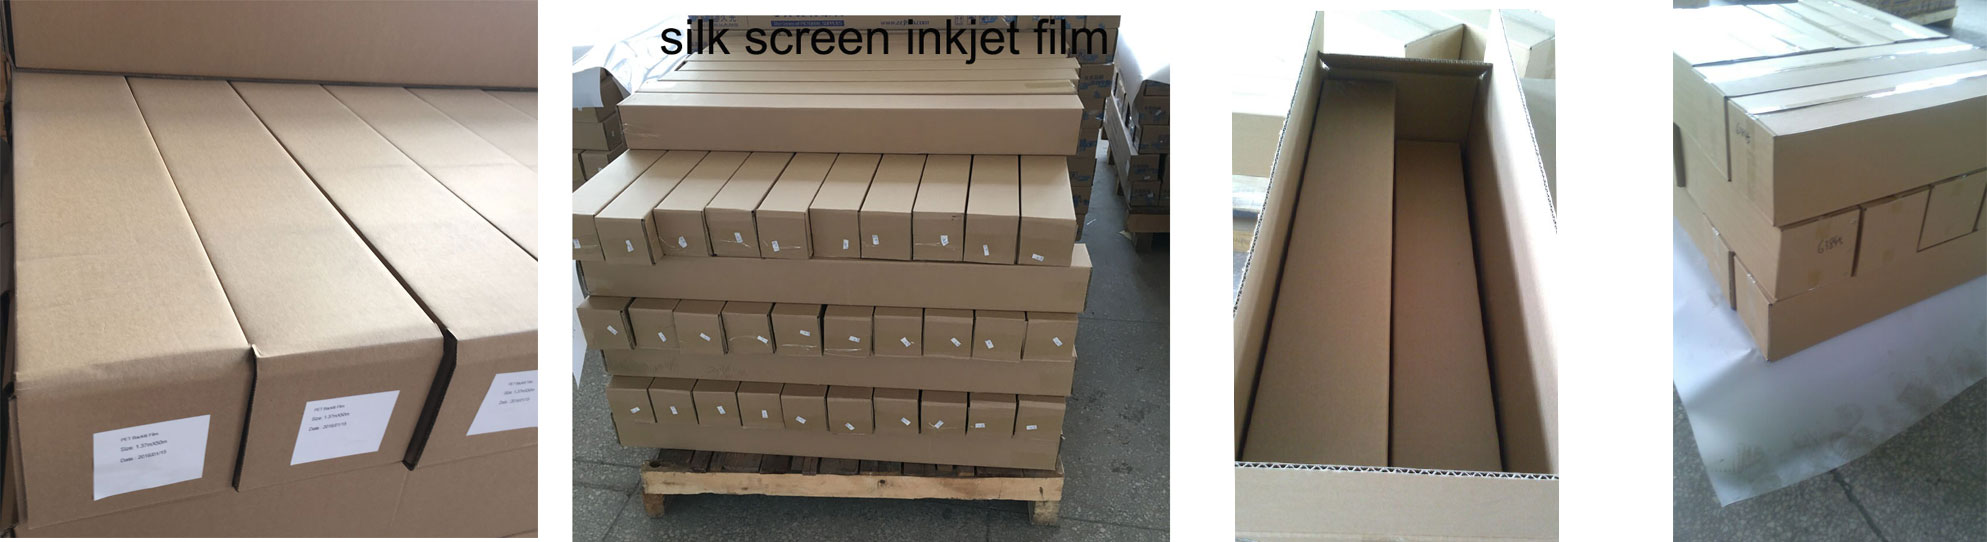 Silk screen Inkjet film 